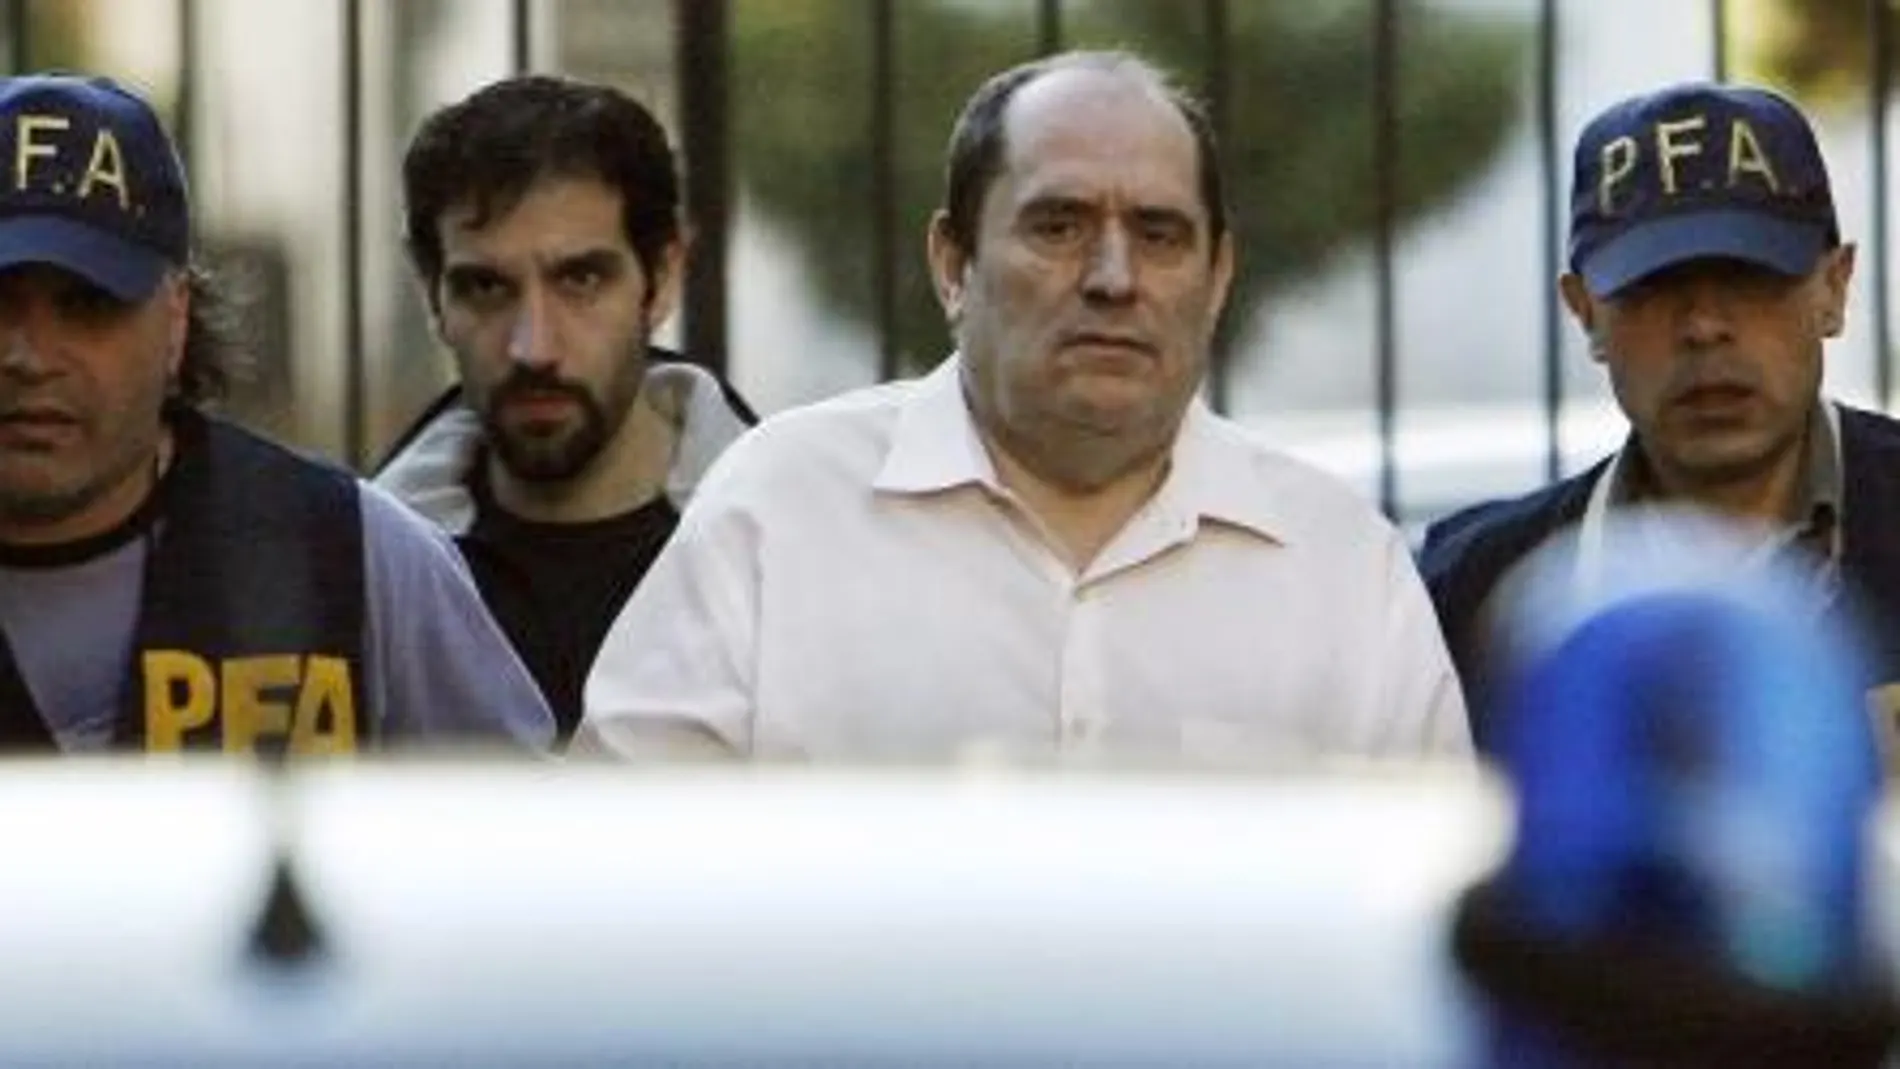 En una imagen de archivo, miembros de la Policía Federal Argentina trasladan al abogado José Emilio Rodríguez Menéndez, buscado por la justicia española, que fue detenido el 9 de octubre de 2008 en Buenos Aires por agentes de Interpol.